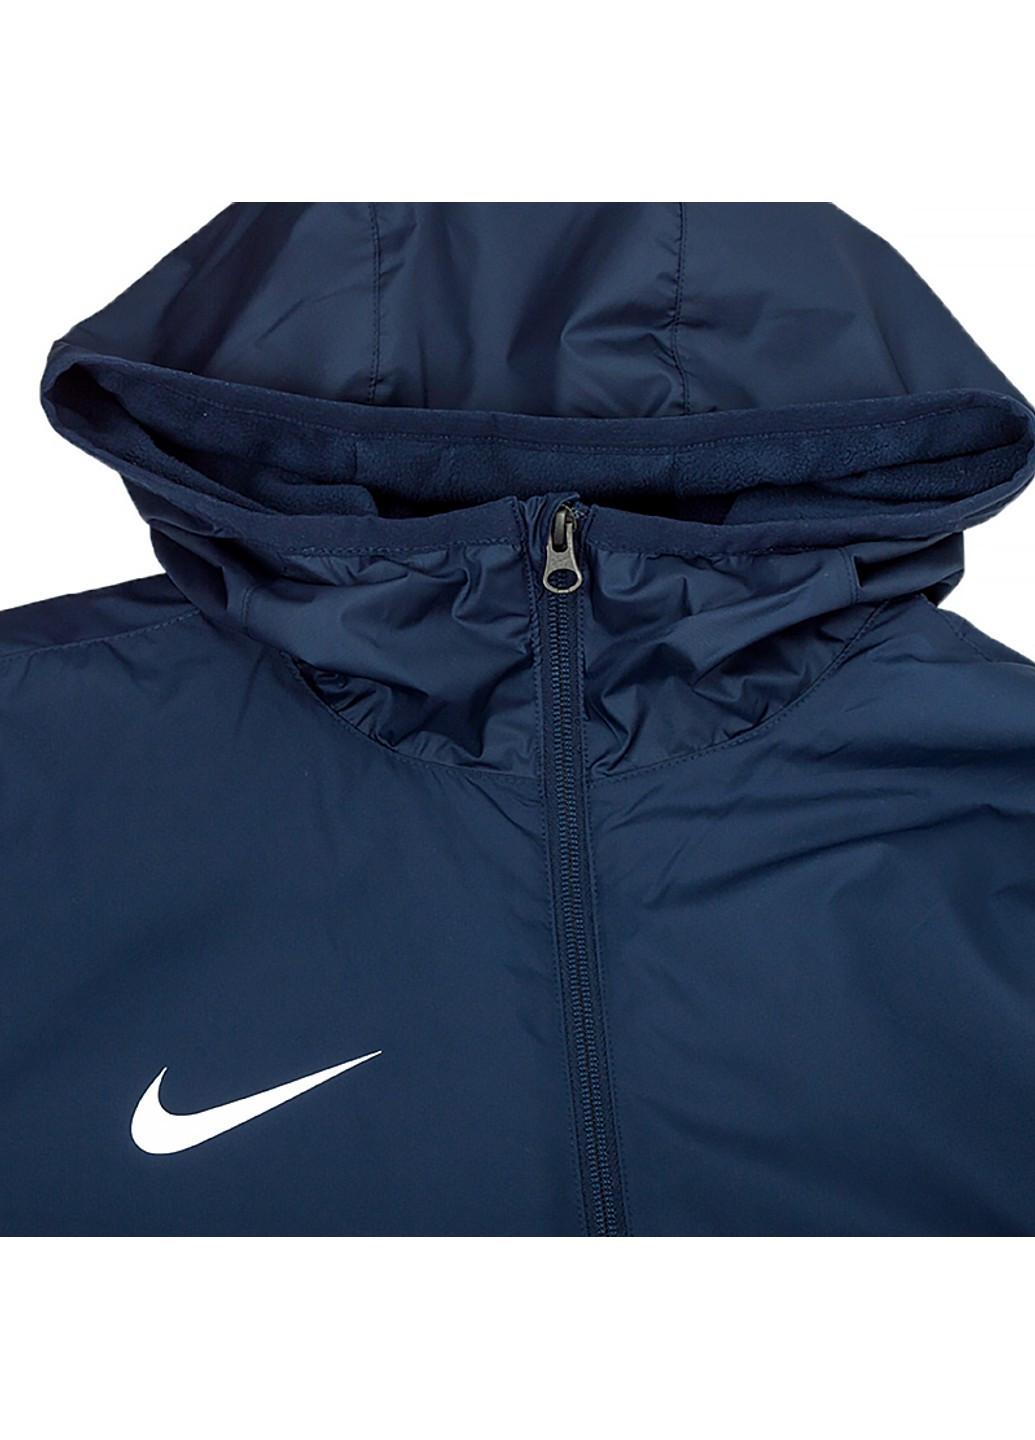 Синяя демисезонная куртка m nk syn fl rpl park20 sdf jkt Nike